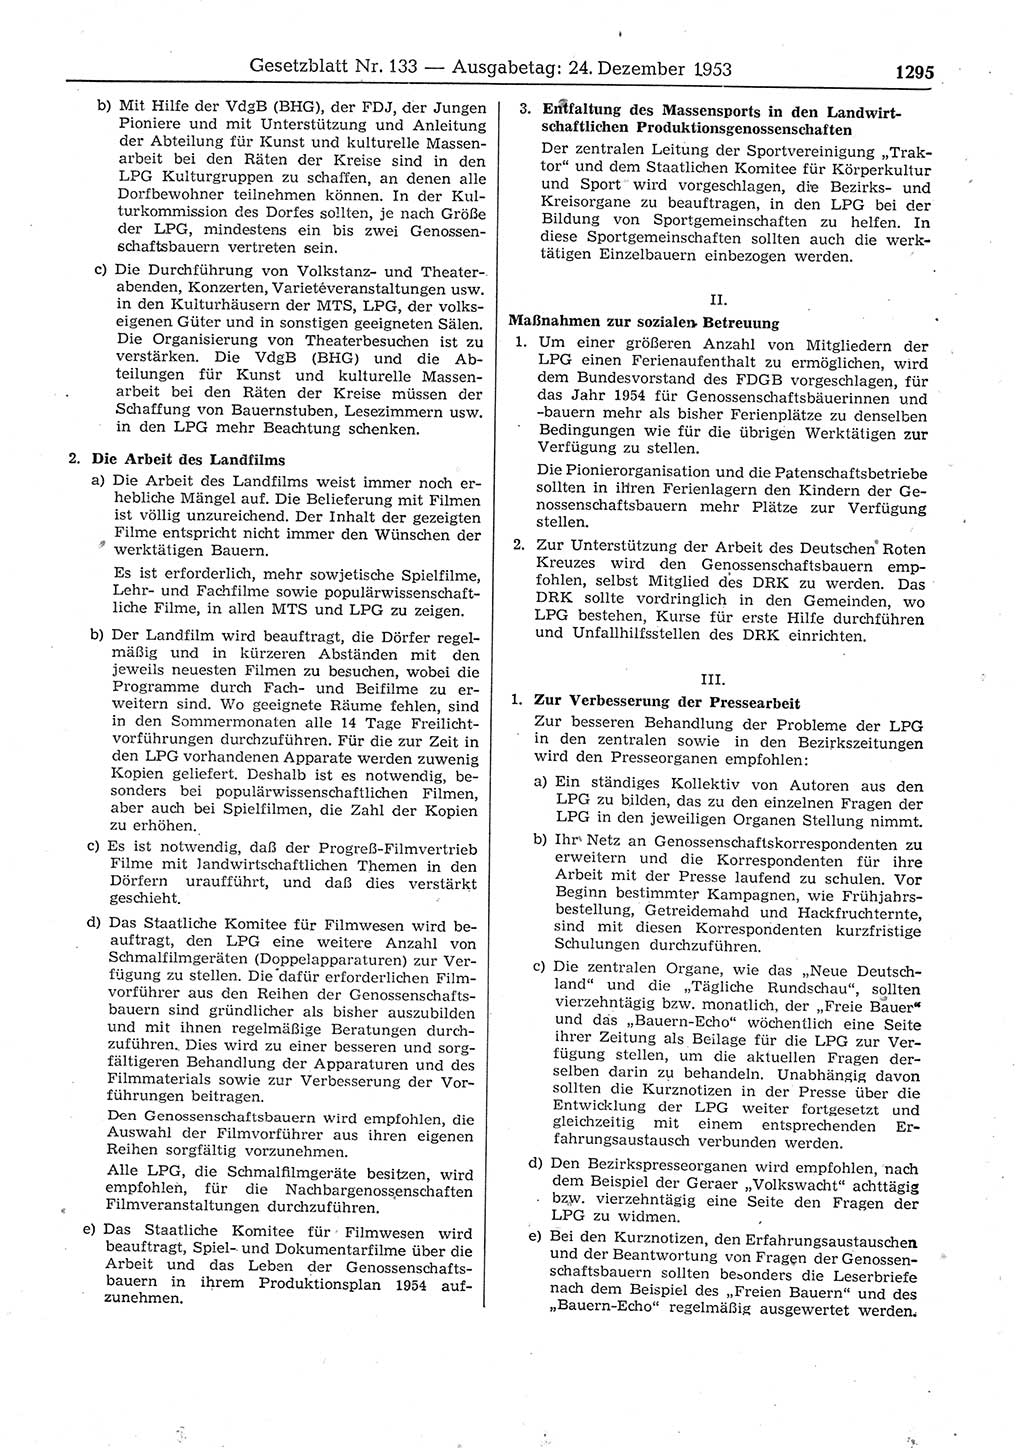 Gesetzblatt (GBl.) der Deutschen Demokratischen Republik (DDR) 1953, Seite 1295 (GBl. DDR 1953, S. 1295)